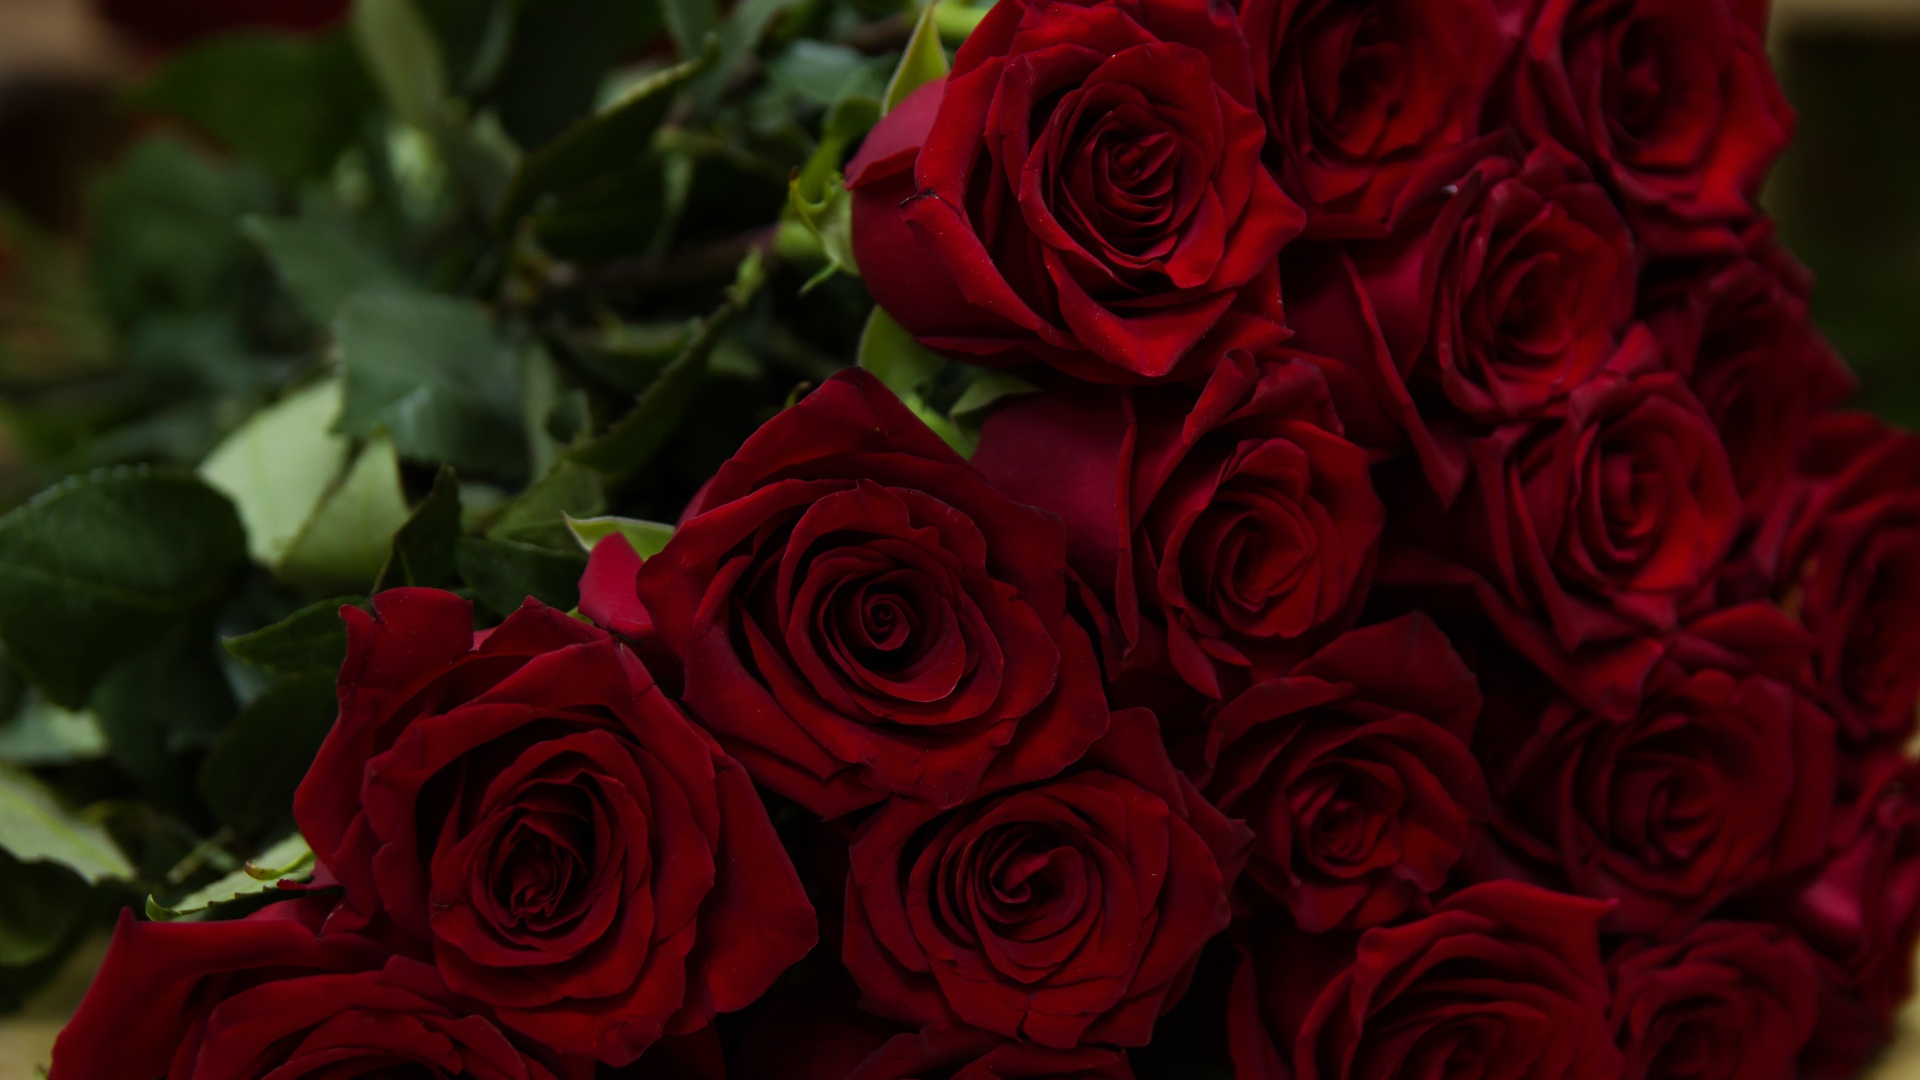 Большой букет красивых красных английский роз